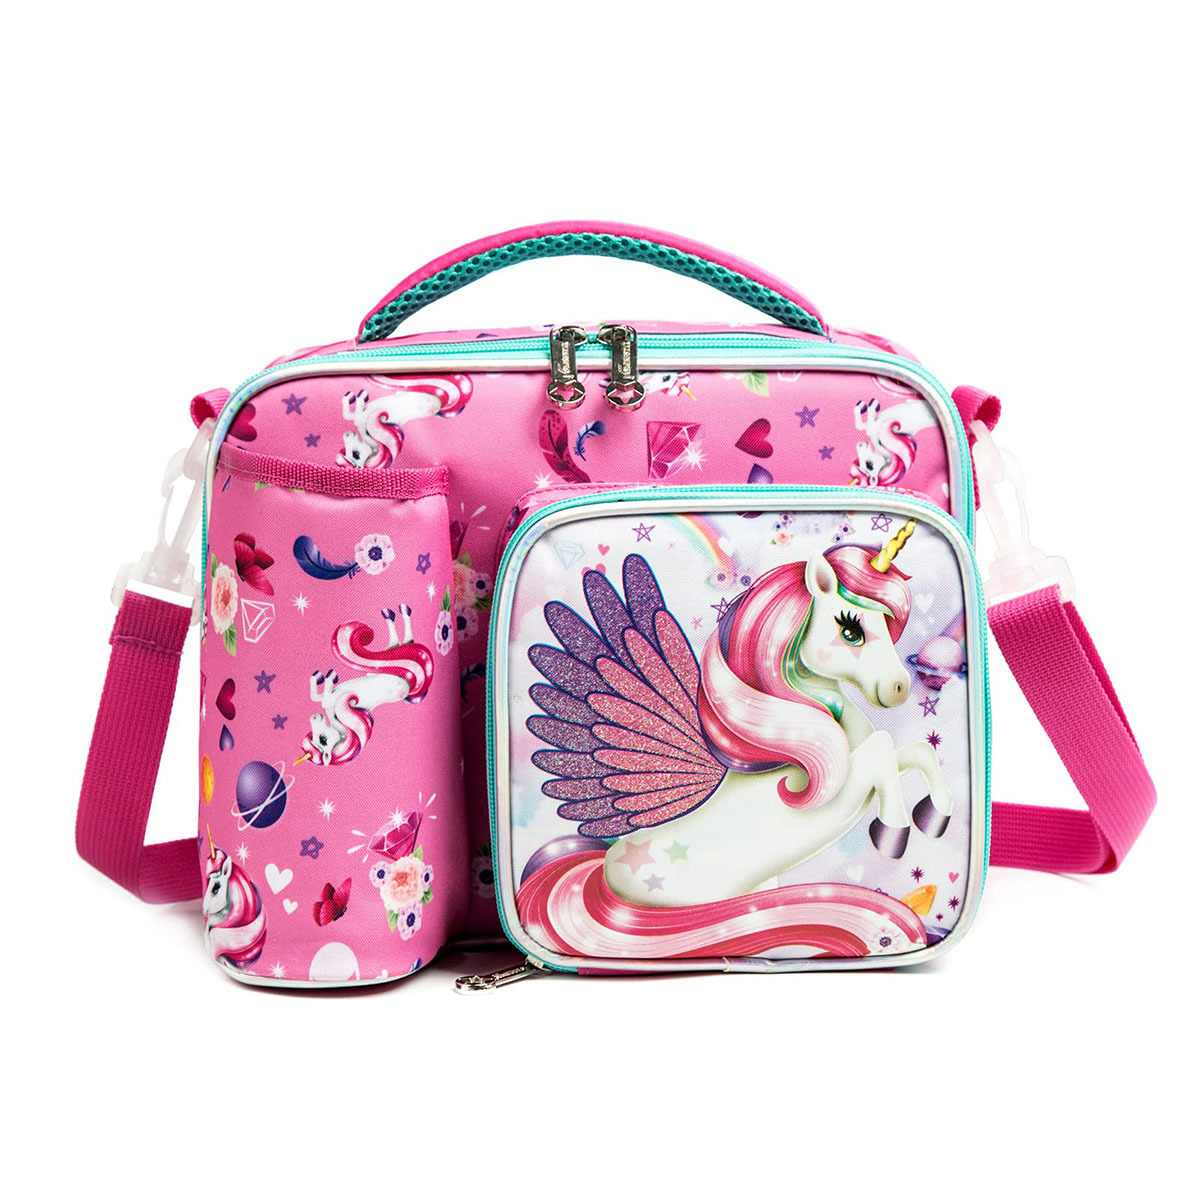 Unicorn Lovely School Tote Bag For Girls